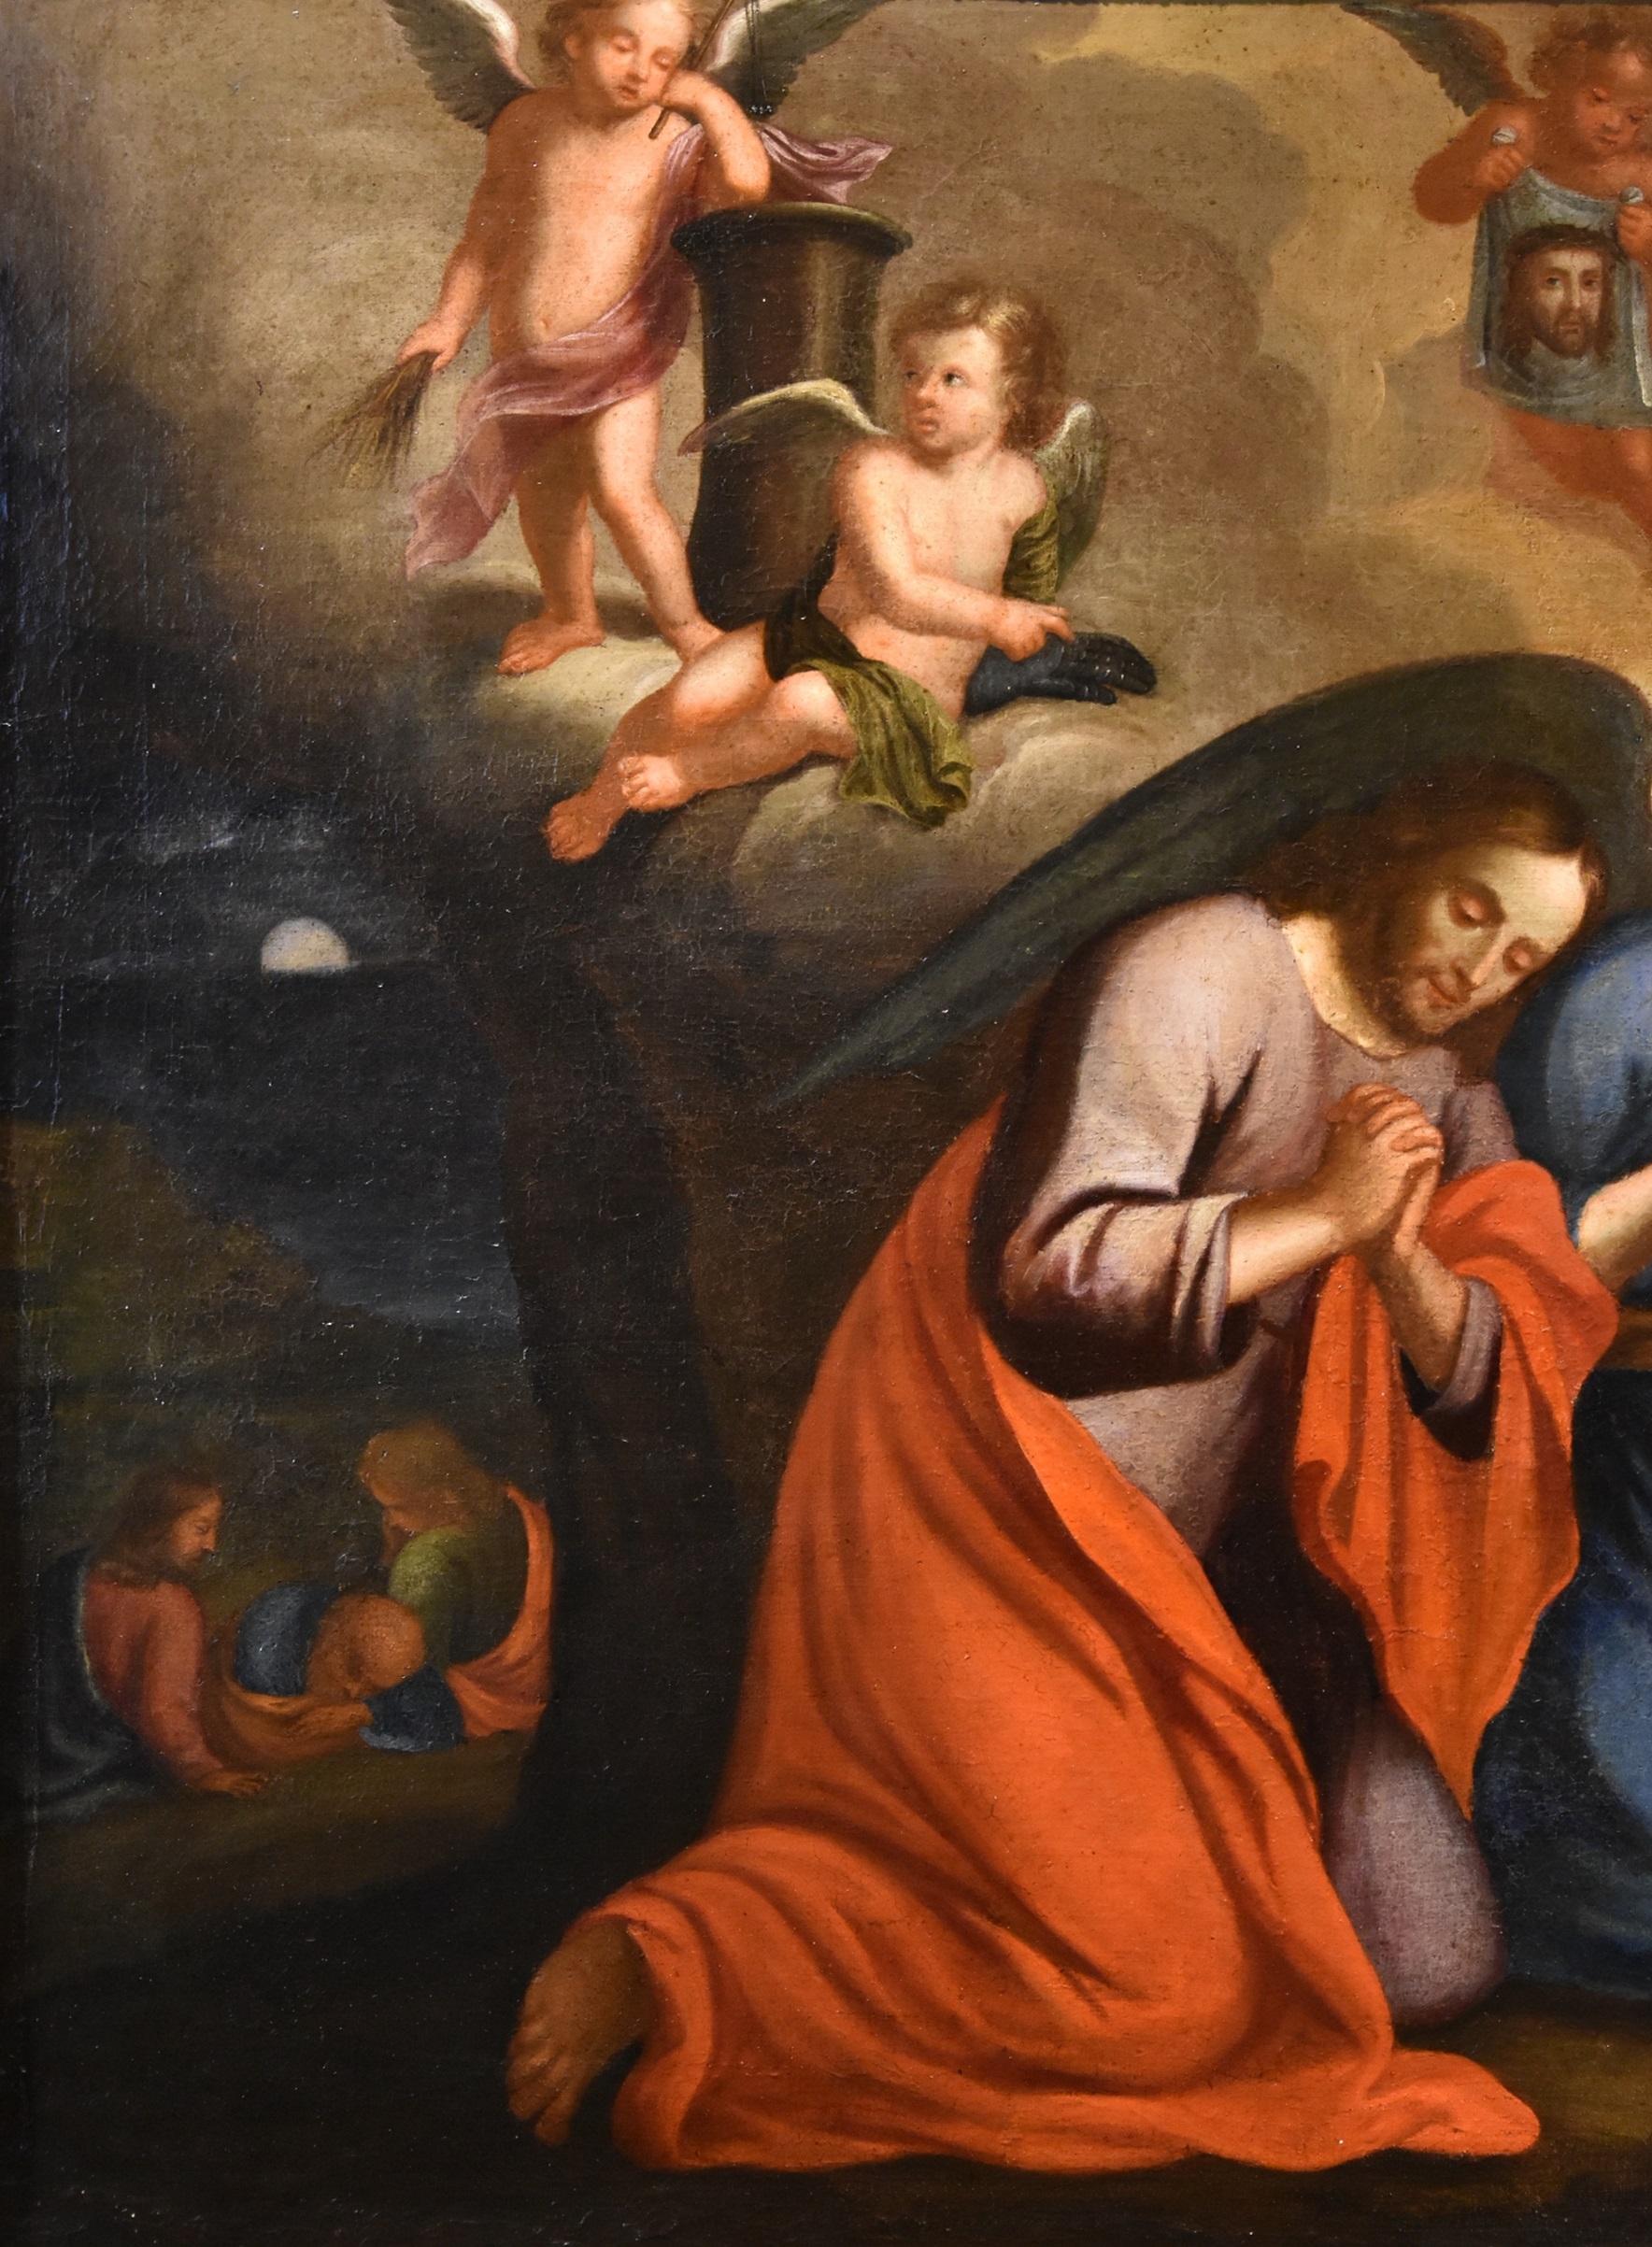 Religiöse Malerei Christus Jesus Lama, Öl auf Leinwand, 17/18. Jahrhundert, Alter Meister  (Alte Meister), Painting, von  Giovan Battista Lama (naples, 1673 - 1748) 